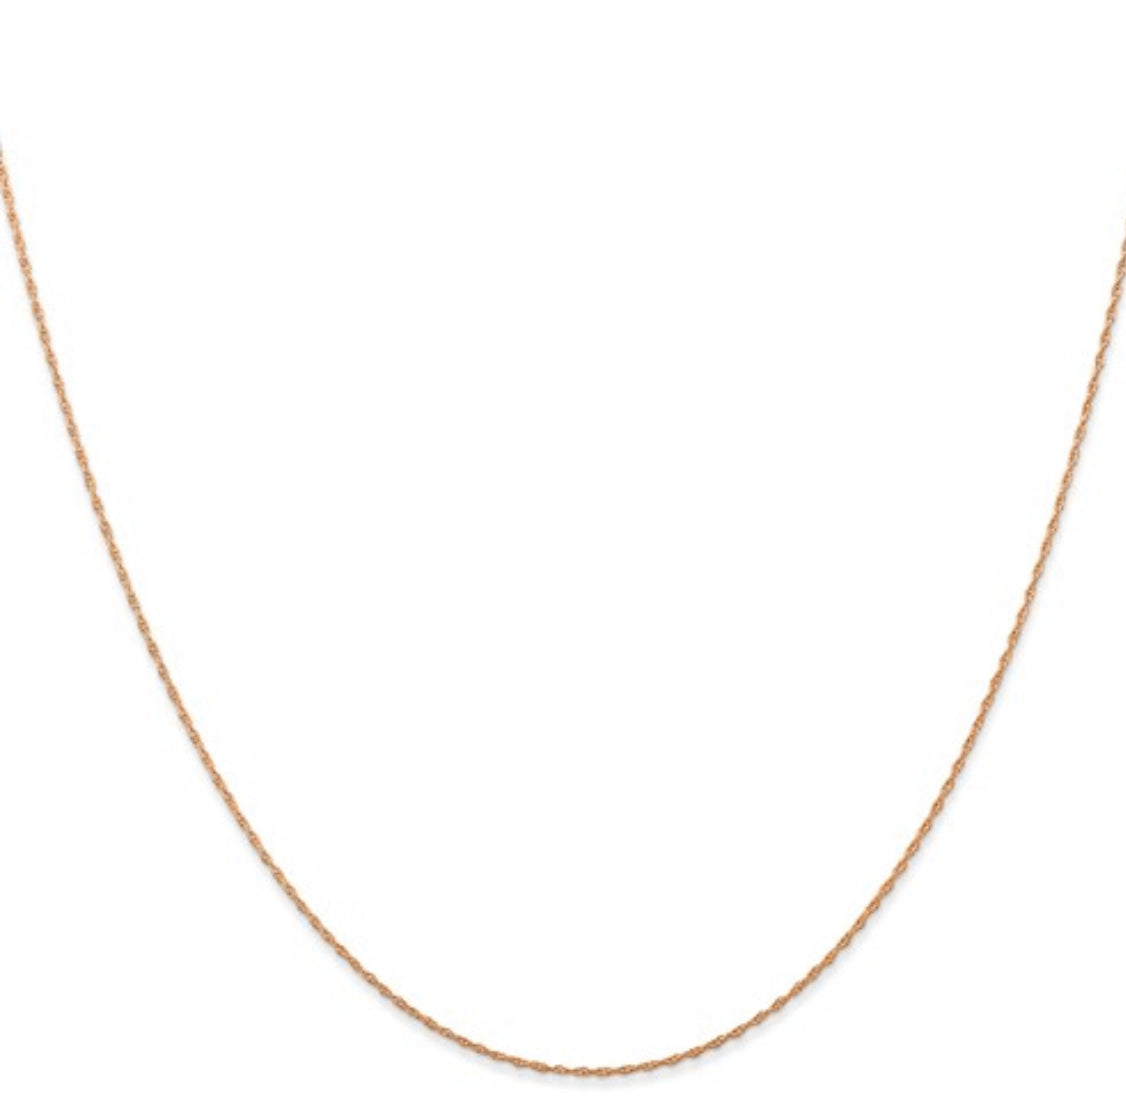 Cadena tipo cable cardada en oro rosa de 14 quilates con cierre de resorte - 1,65 mm - varias longitudes